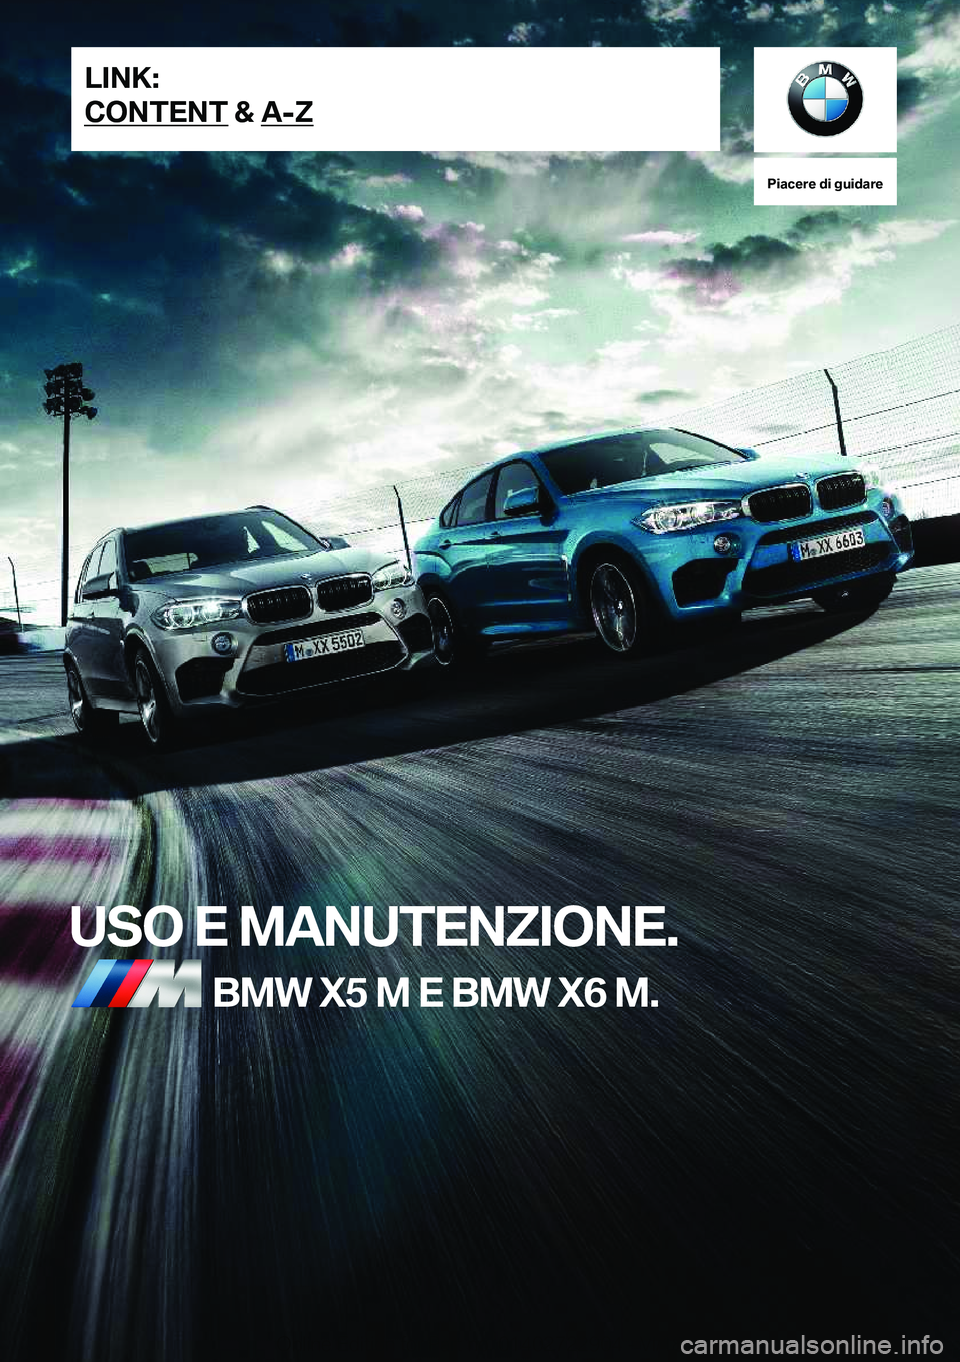 BMW X6 M 2019  Libretti Di Uso E manutenzione (in Italian) �P�i�a�c�e�r�e��d�i��g�u�i�d�a�r�e
�U�S�O��E��M�A�N�U�T�E�N�Z�I�O�N�E�.�B�M�W��X�5��M��E��B�M�W��X�6��M�.�L�I�N�K�:
�C�O�N�T�E�N�T��&��A�-�Z�O�n�l�i�n�e��E�d�i�t�i�o�n��f�o�r��P�a�r�t�